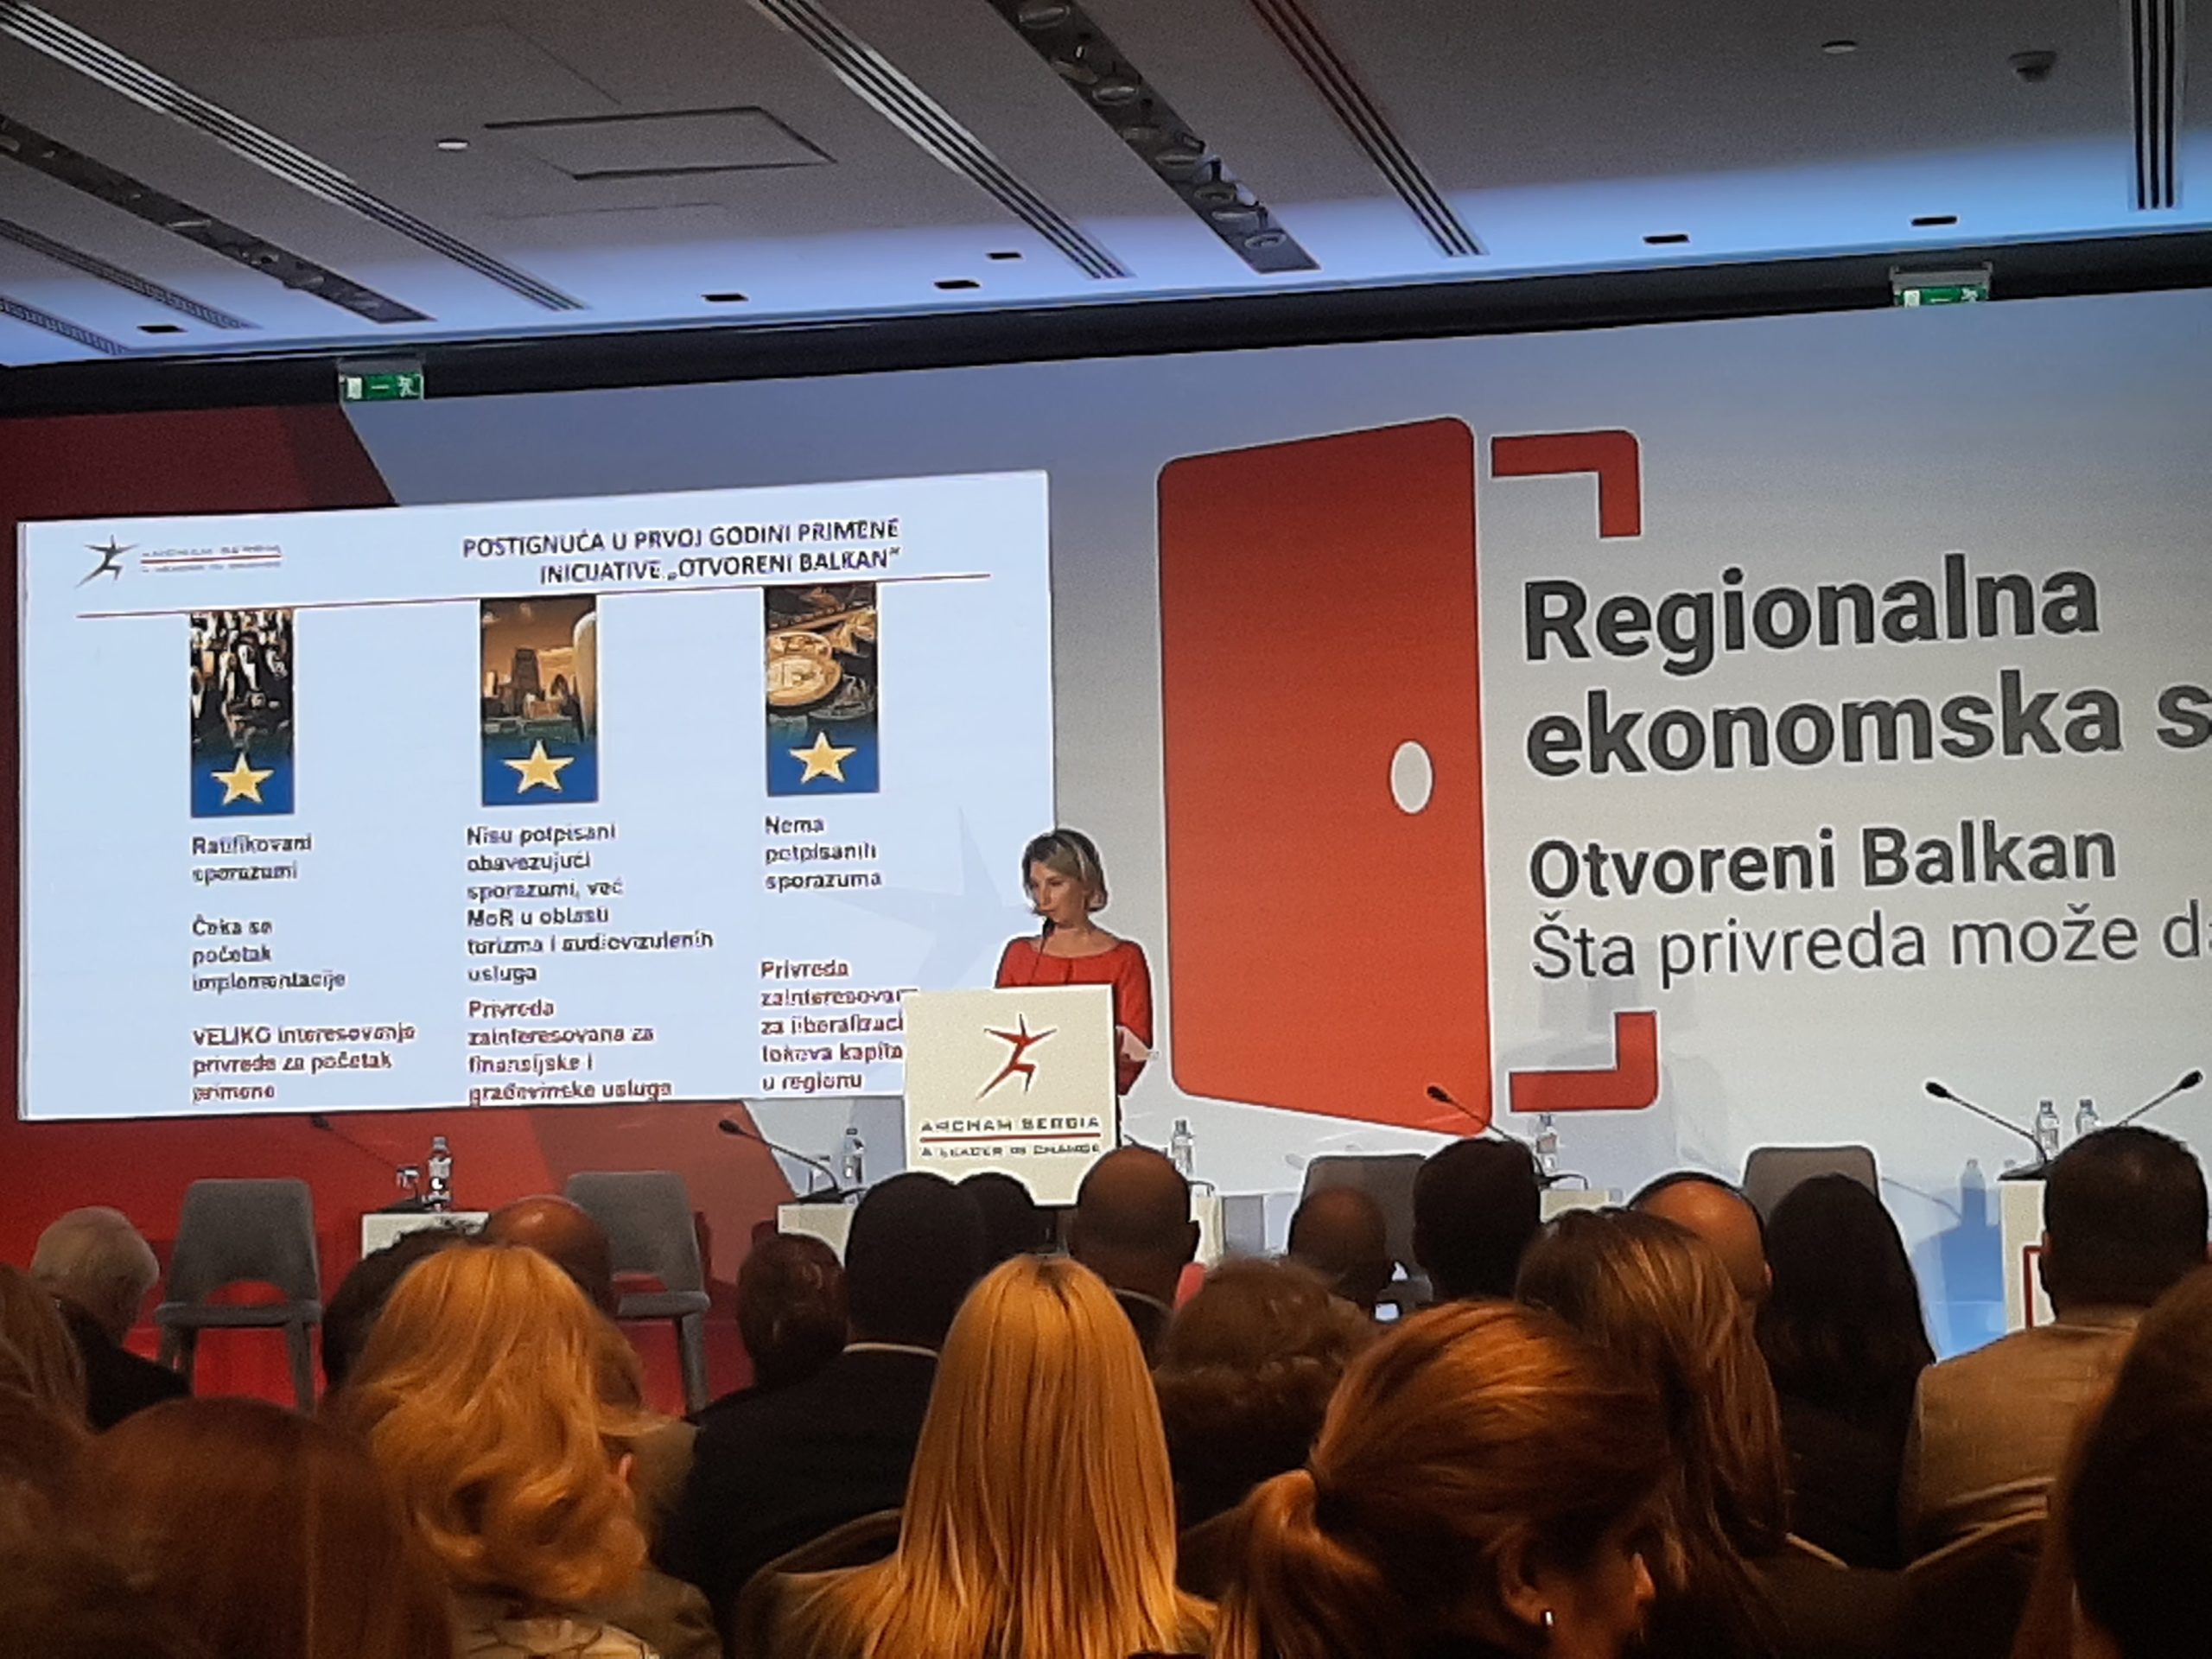 Rezultate istraživanja predstavila je Amalija Pavić, izvršna direktora Američke privredne komore u Srbiji, na konferenciji u Beogradu, održanoj 24. aprila